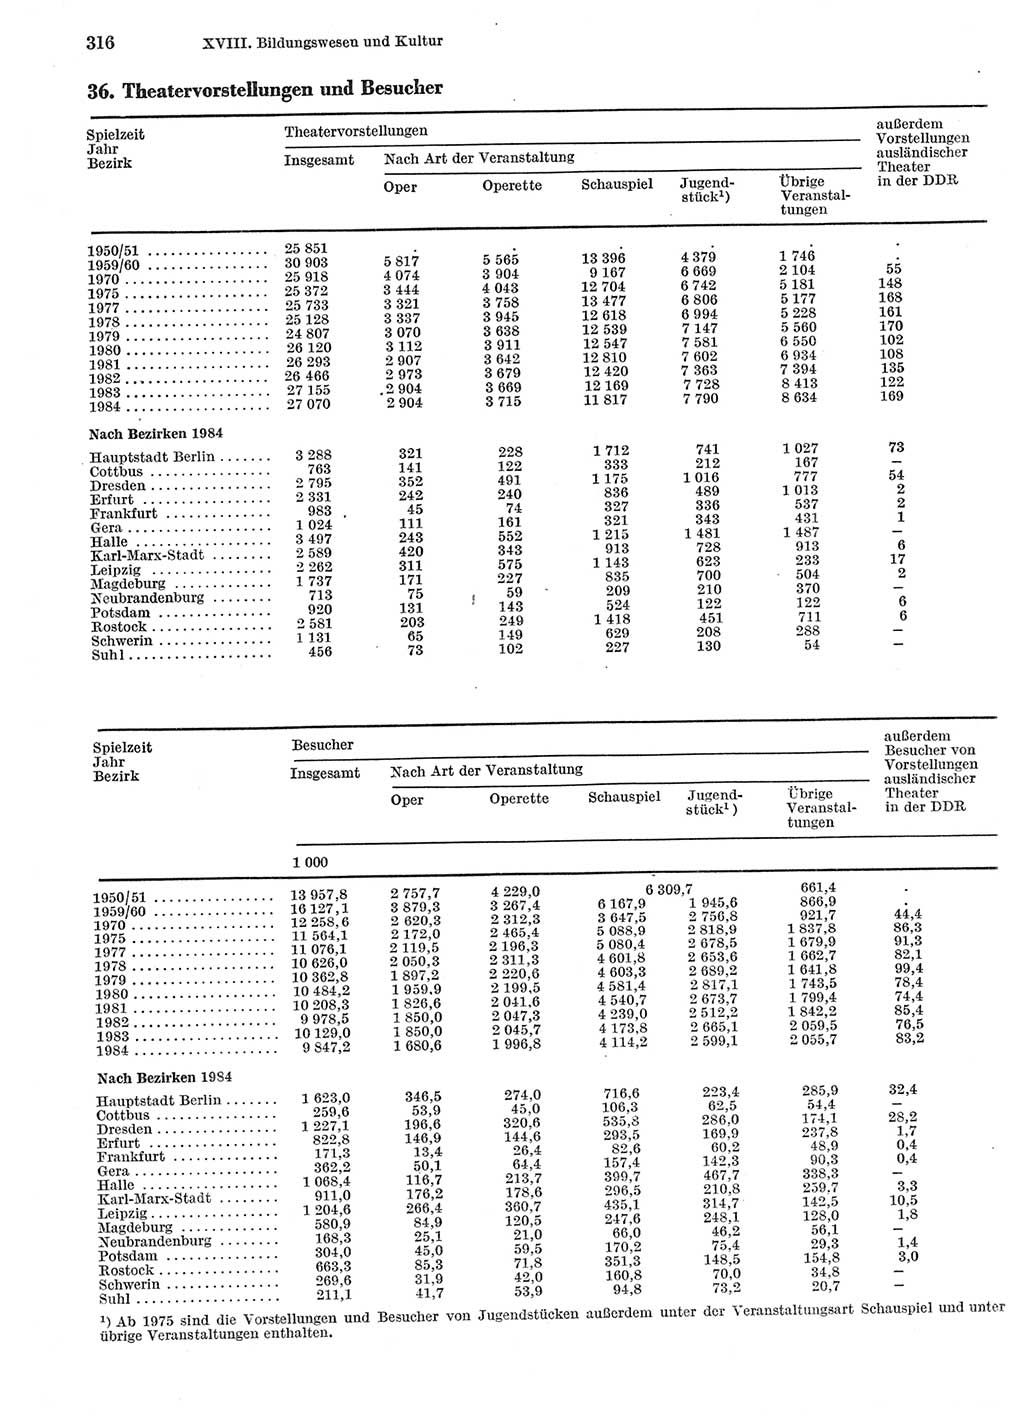 Statistisches Jahrbuch der Deutschen Demokratischen Republik (DDR) 1985, Seite 316 (Stat. Jb. DDR 1985, S. 316)